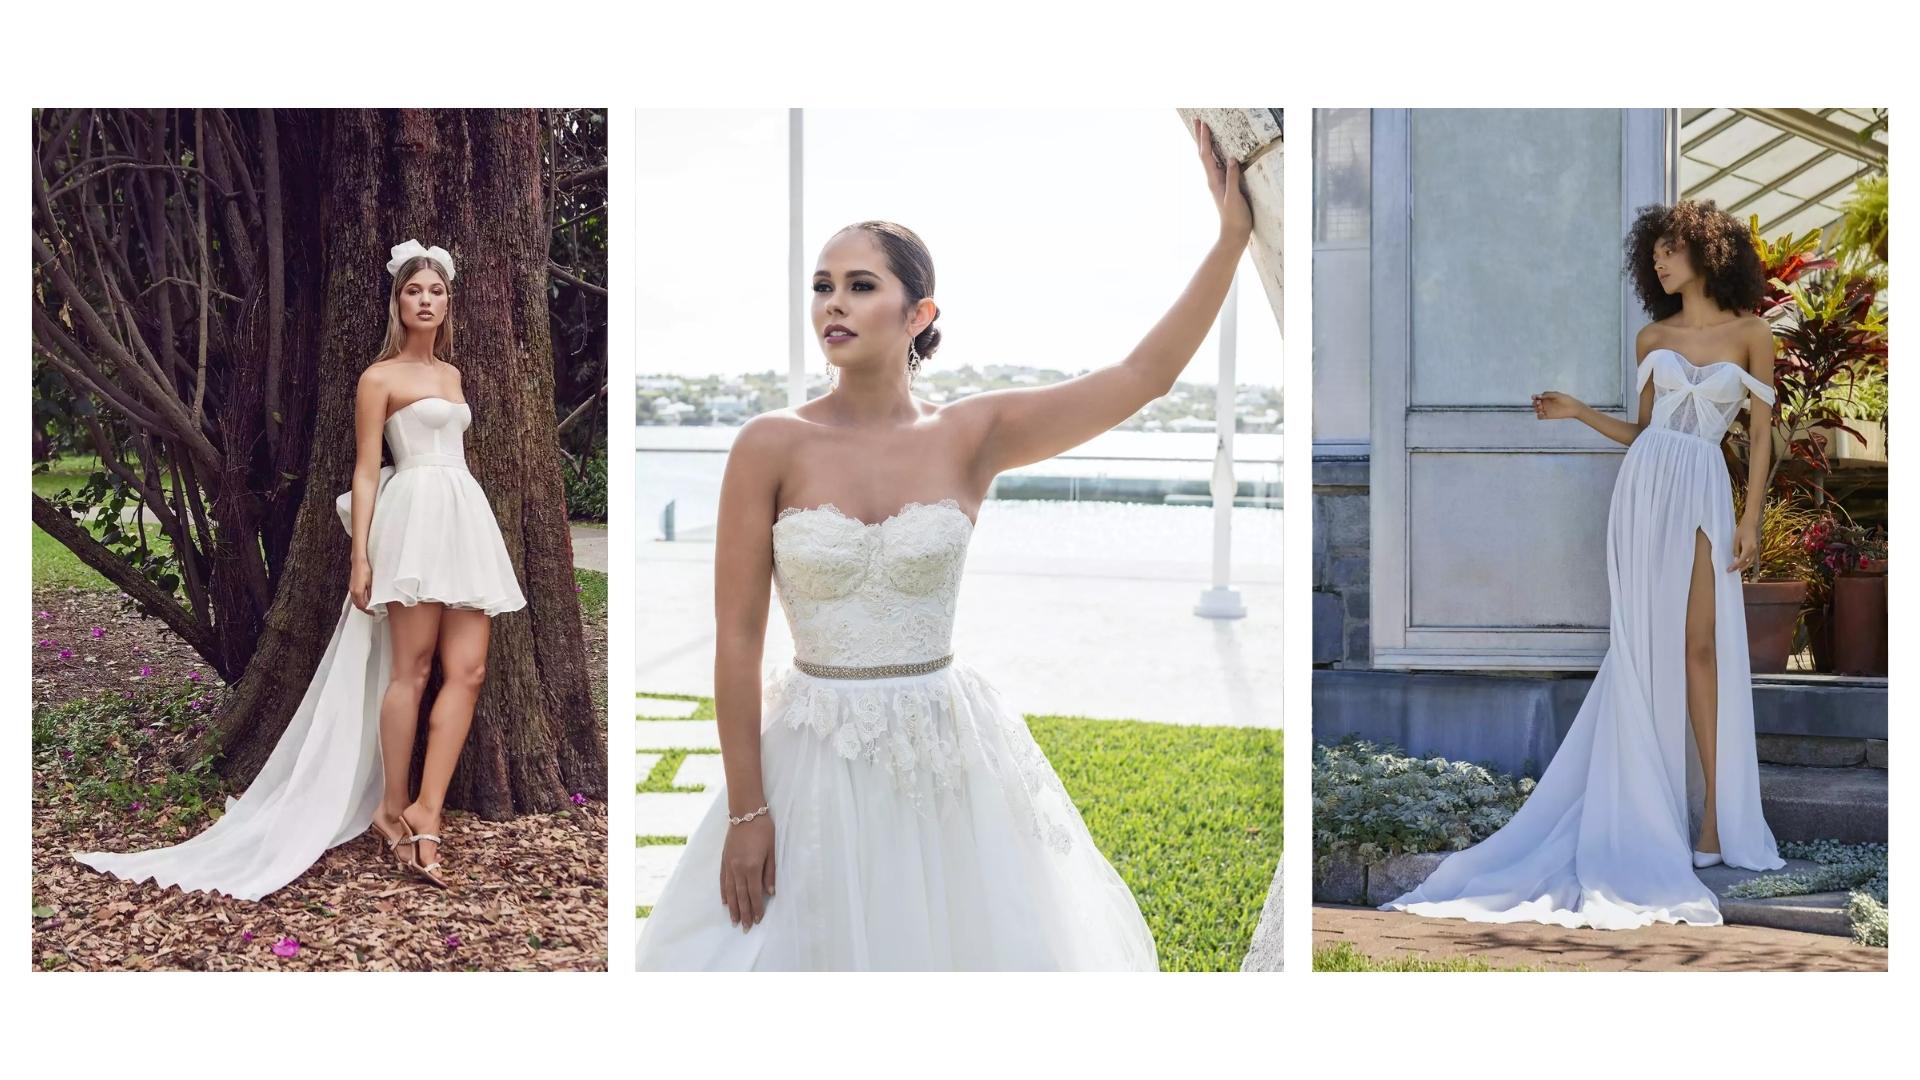 Vilma Wedding & Event Planner _ Vilma Rapšaitė _ santuoka italijoje _ vestuvės užsienyje 2022 _ vestuvinės suknelės 2022 _ jaunosios apranga _ nuotakos įvaizdis